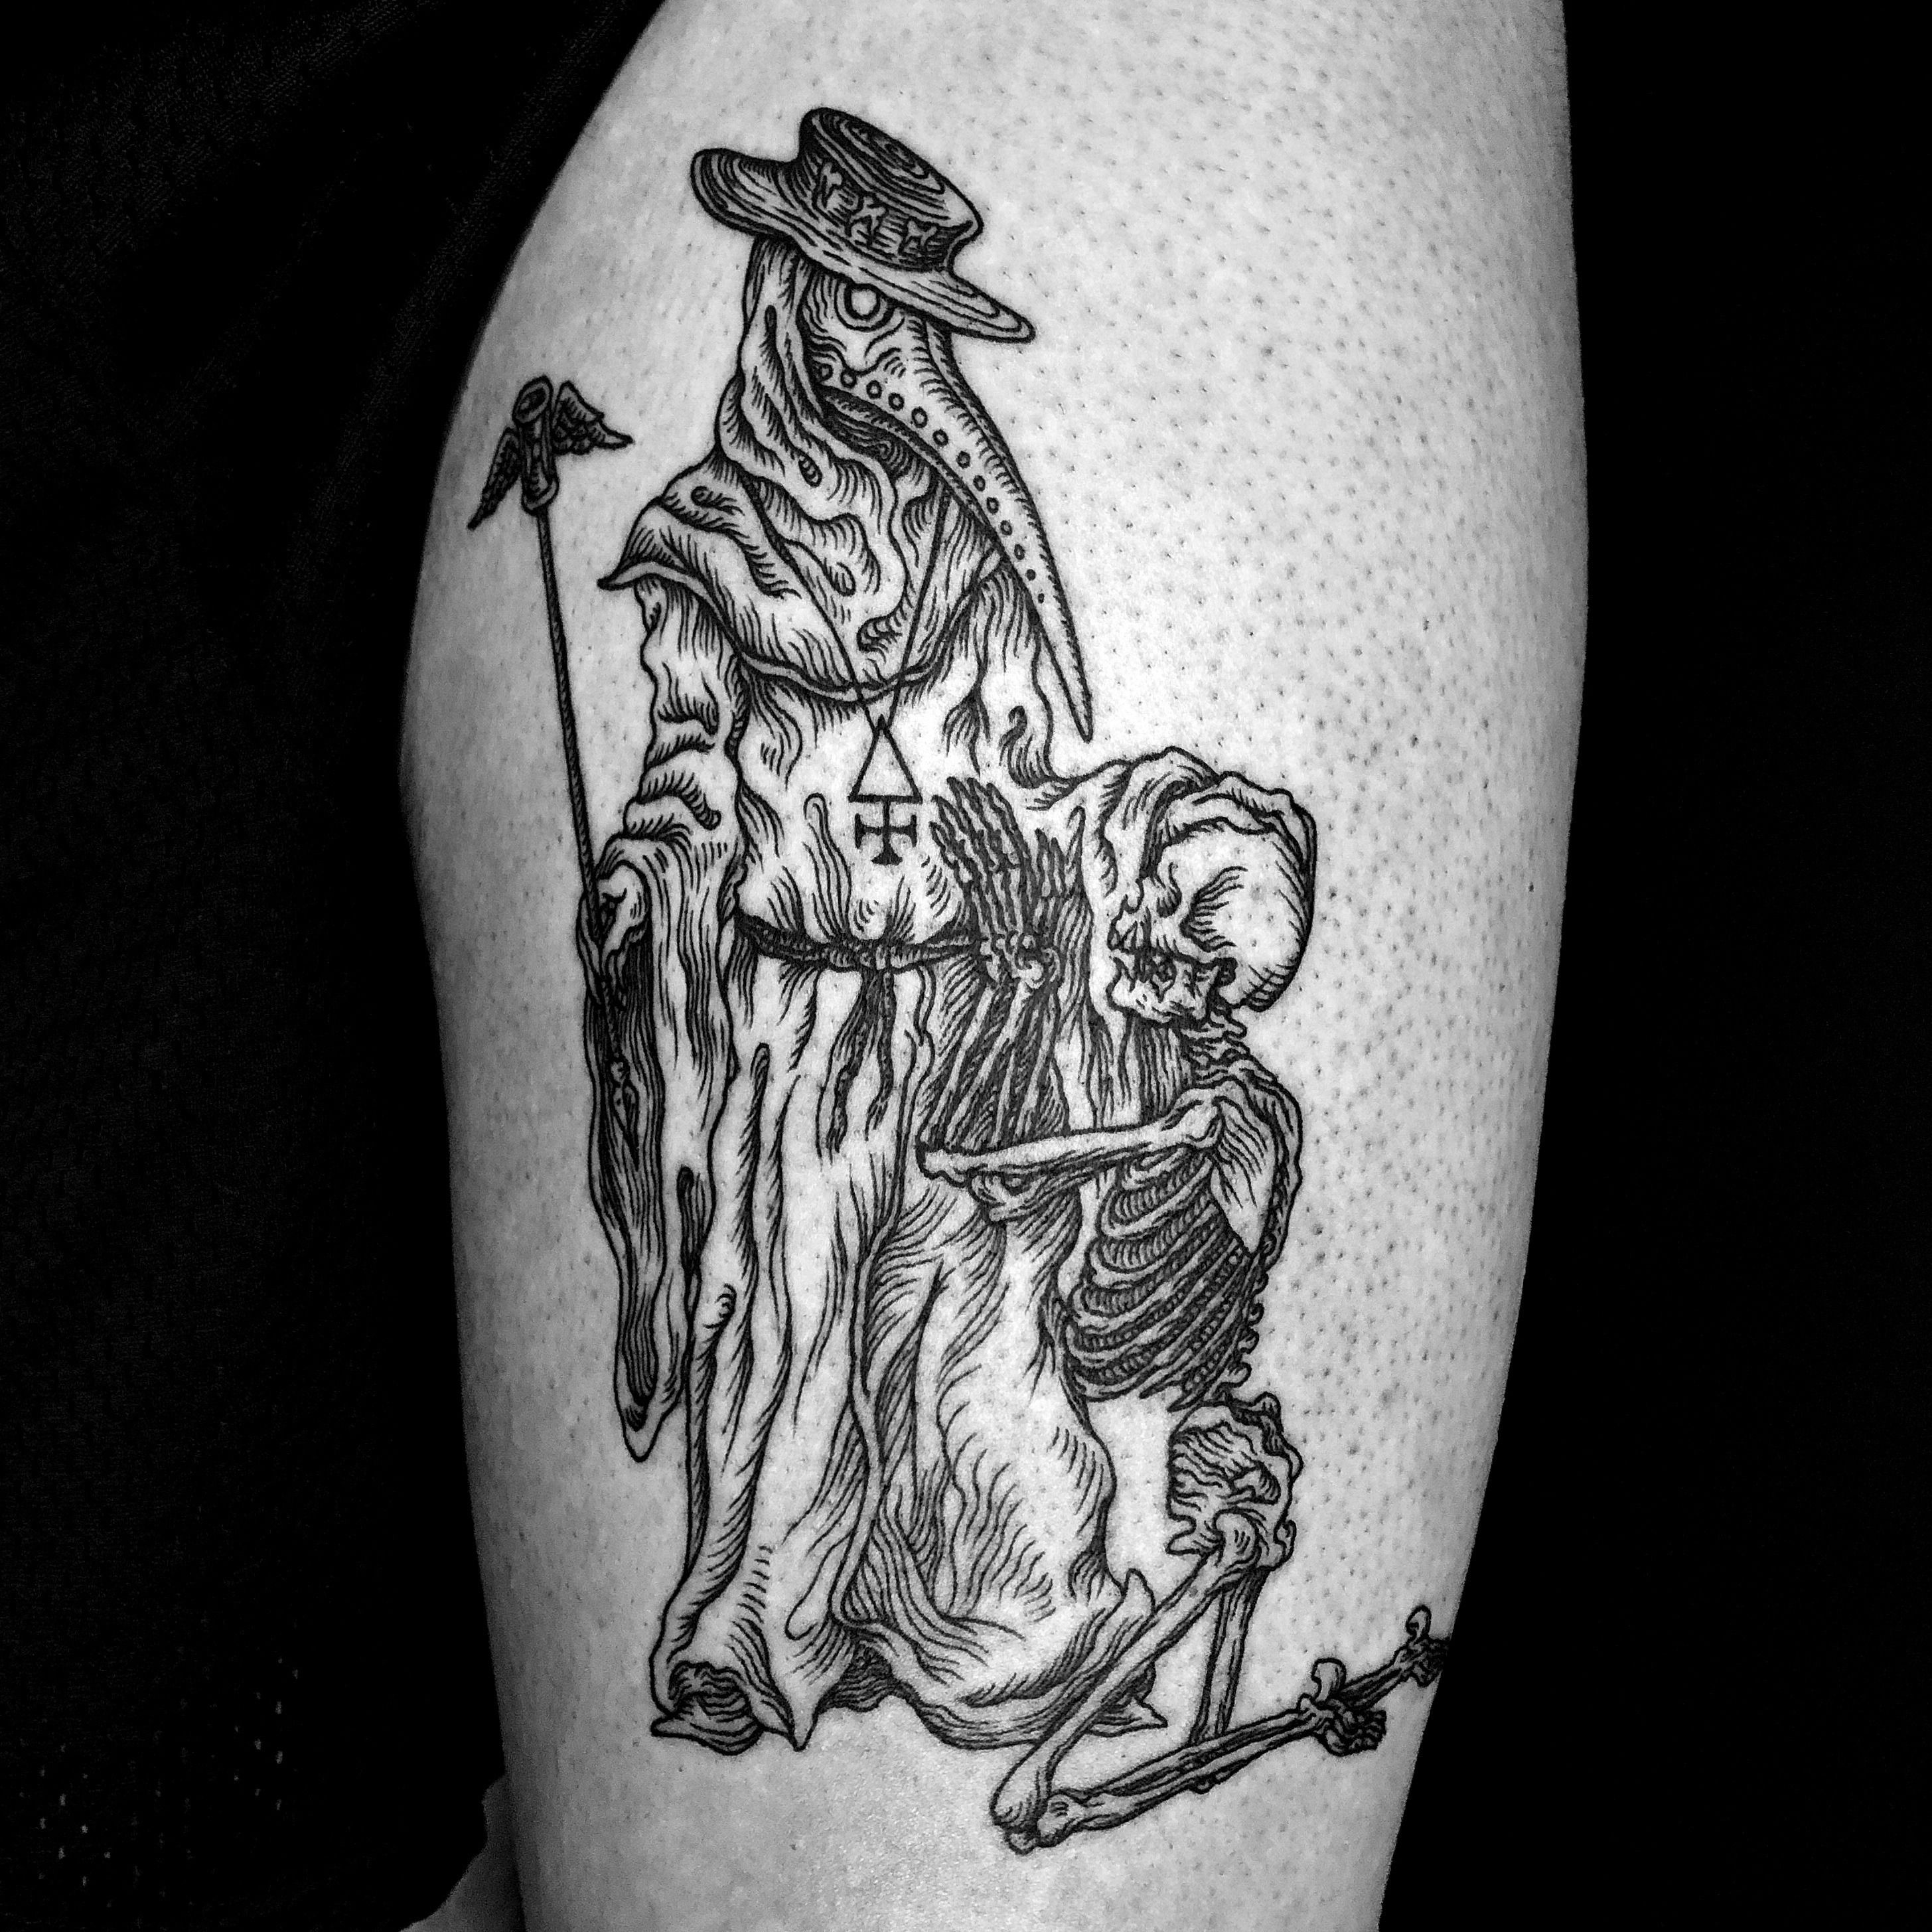 Billy Bernert an ongoing curiosity for tattoos  Tattoo Life